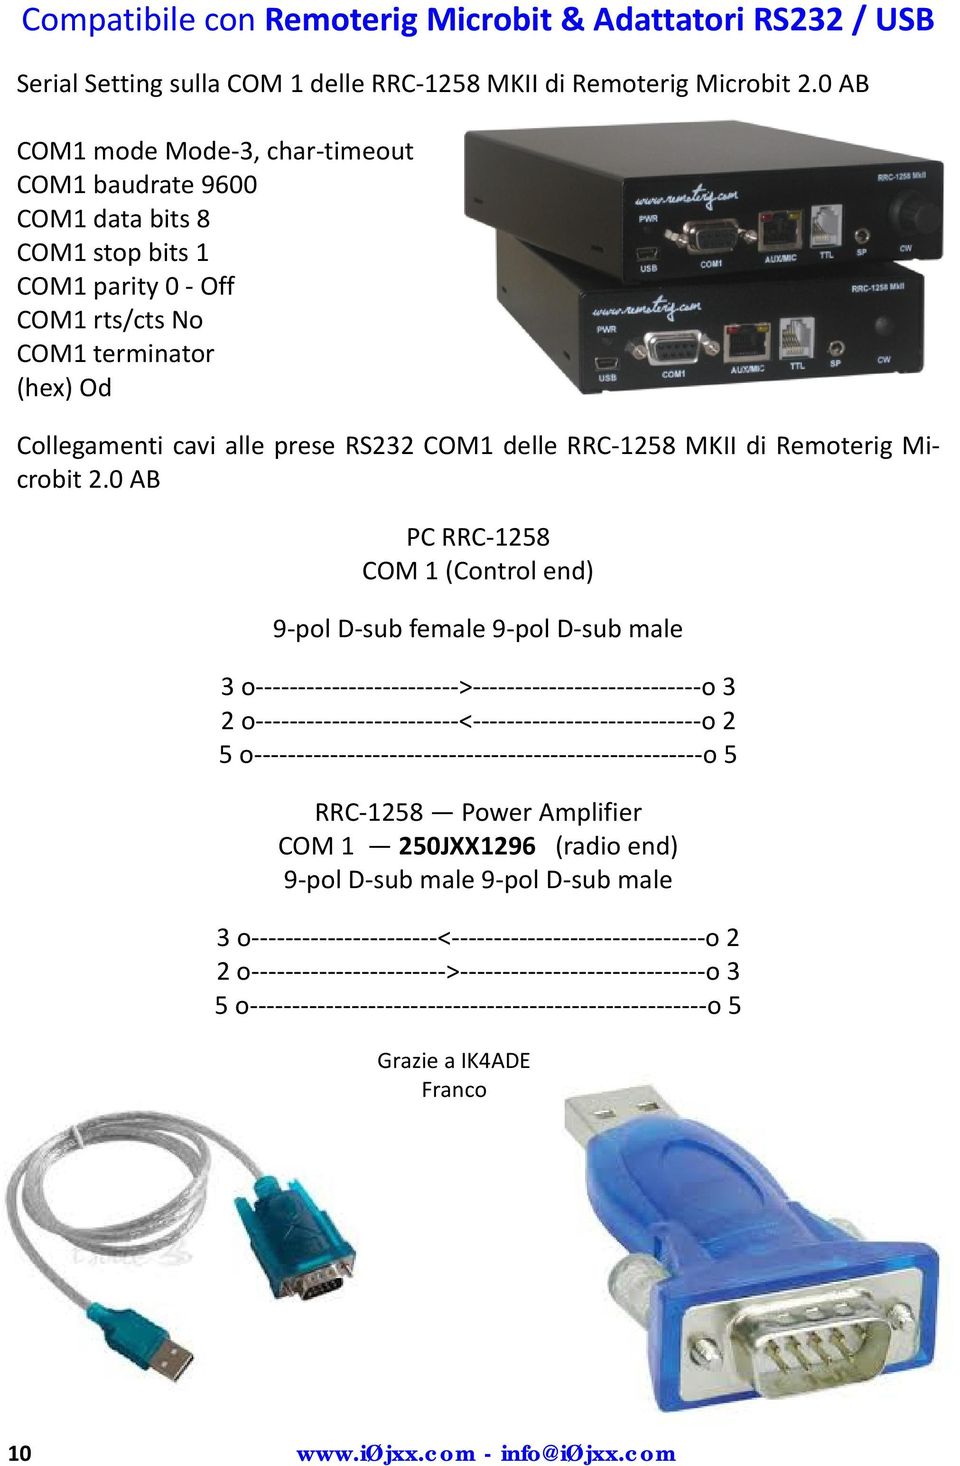 Collegamenti cavi alle prese RS232 COM1 delle RRC 1258 MKII di Remoterig Microbit 2.